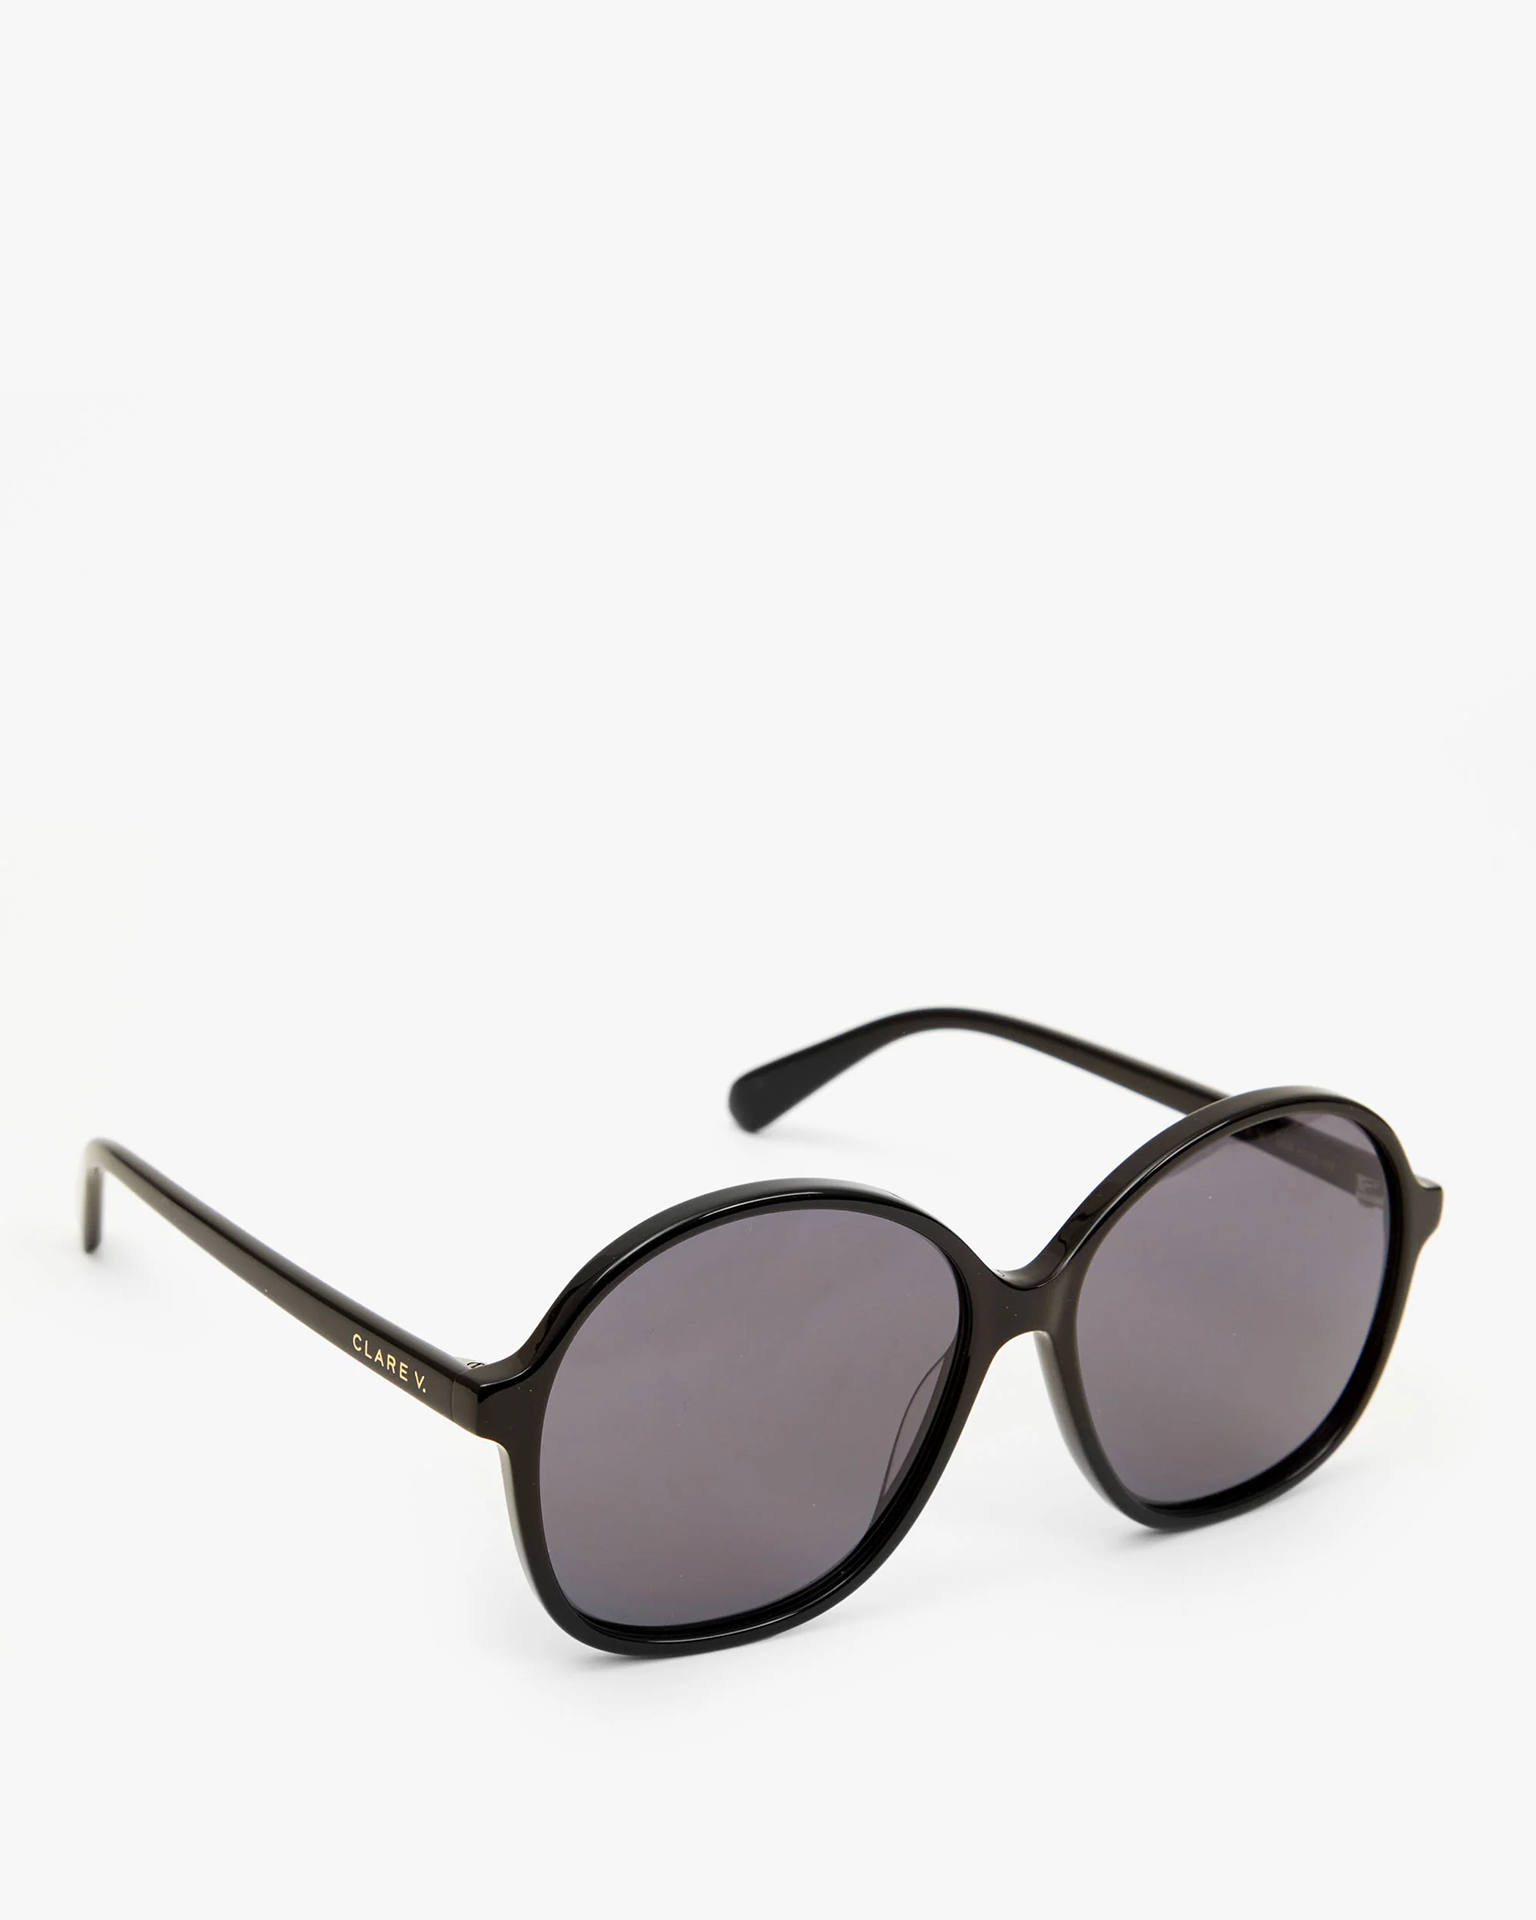 Clare V. Jane Sunglasses in Black